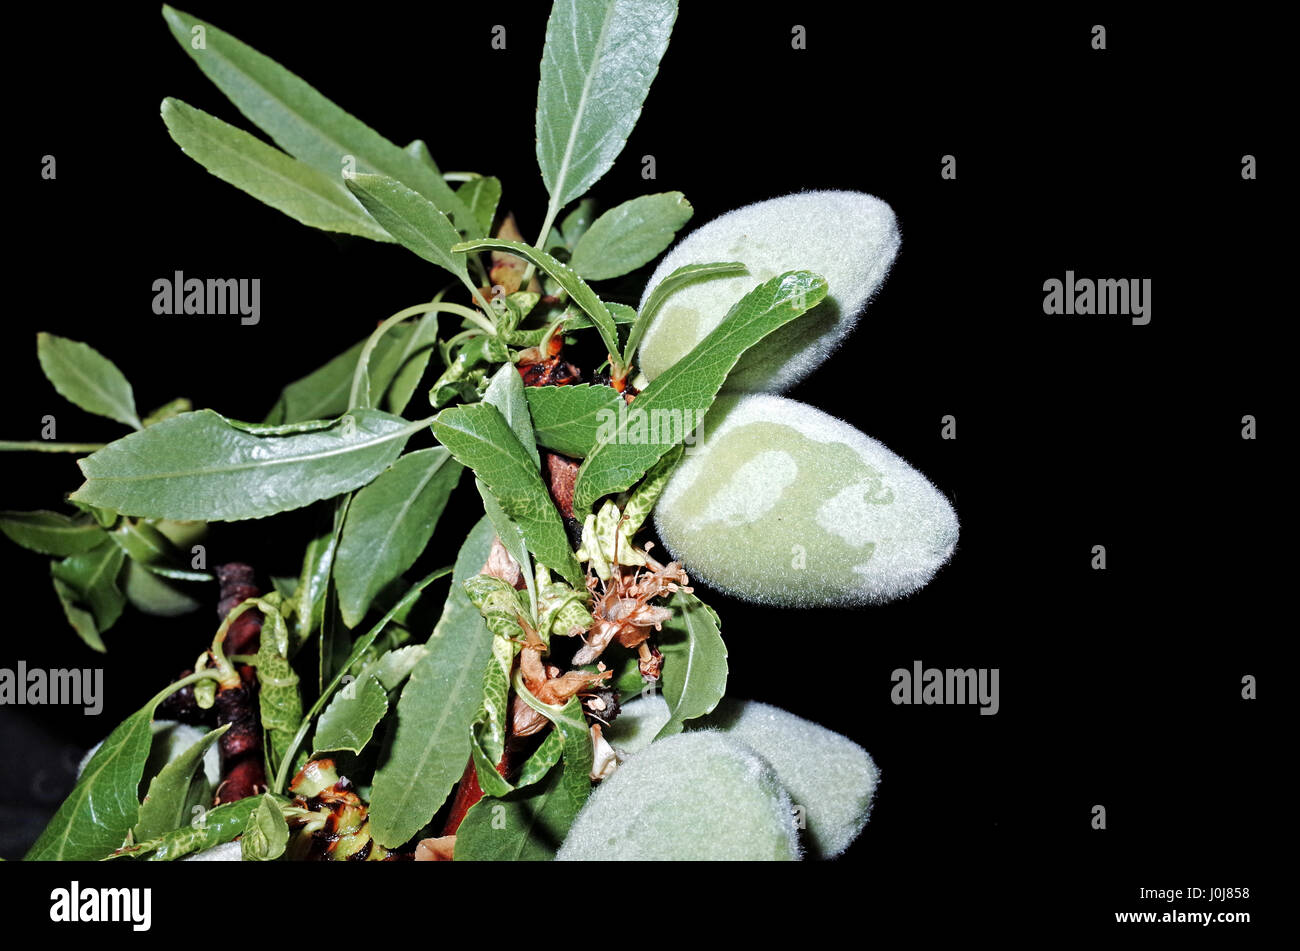 Los frutos de la almendra (Amygdalus communis) Foto de stock